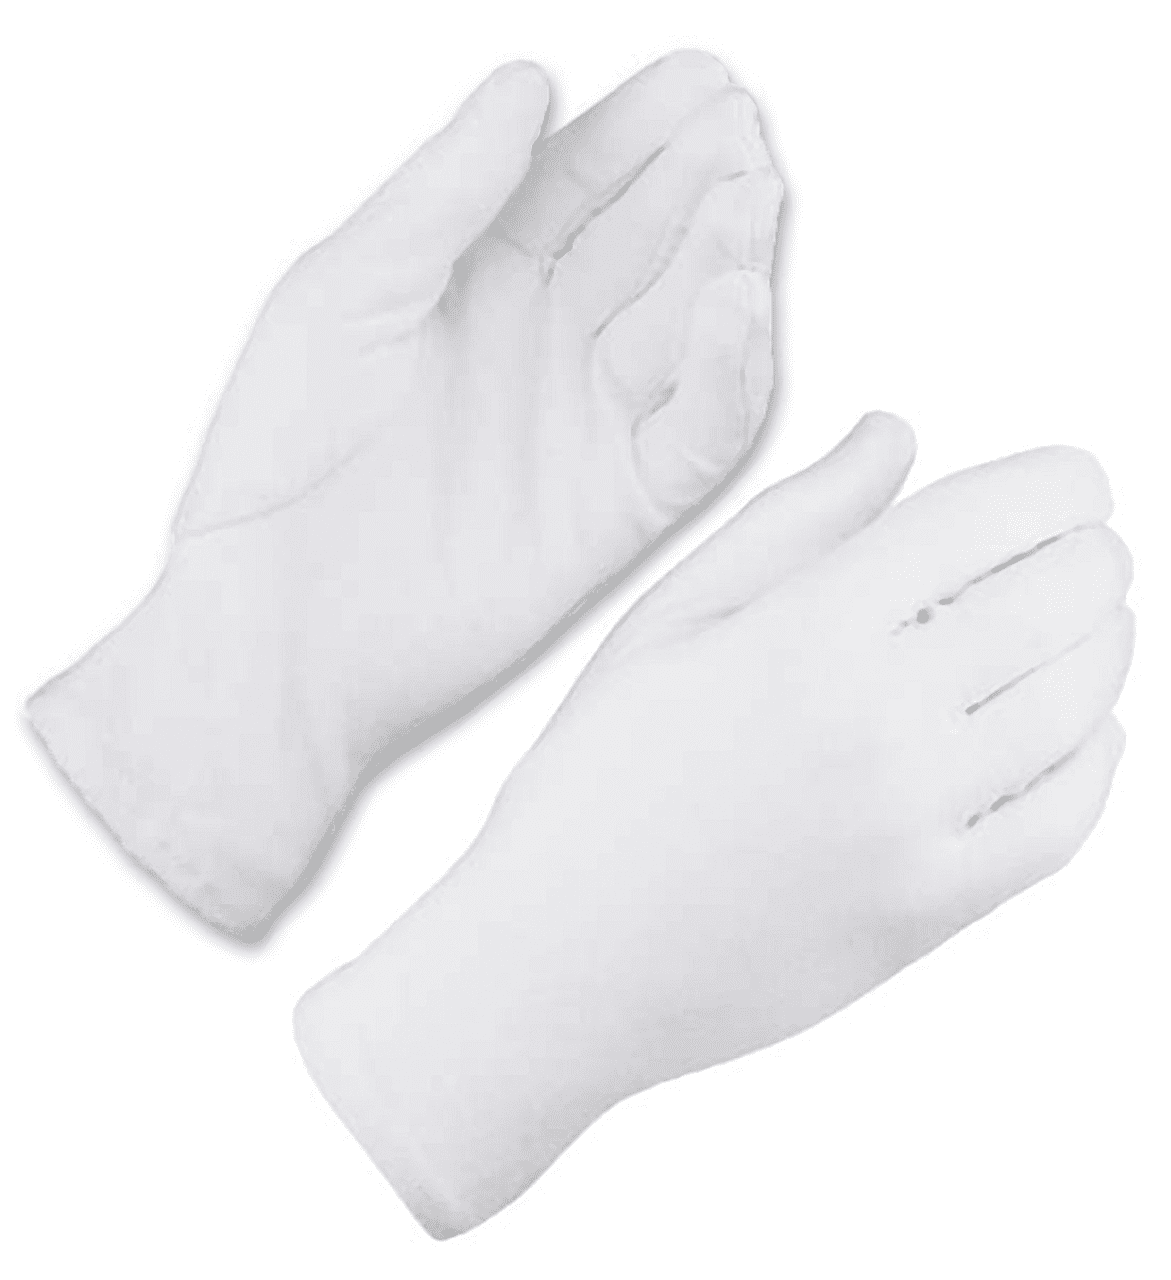 Zwei weiße Handschuhe auf weißem Hintergrund. Die Handschuhe sind ausgefüllt aber am Handgelenk abgeschnitten. Die Handschuhe sind einmal von vorne und einmal von hinten abgebildet.